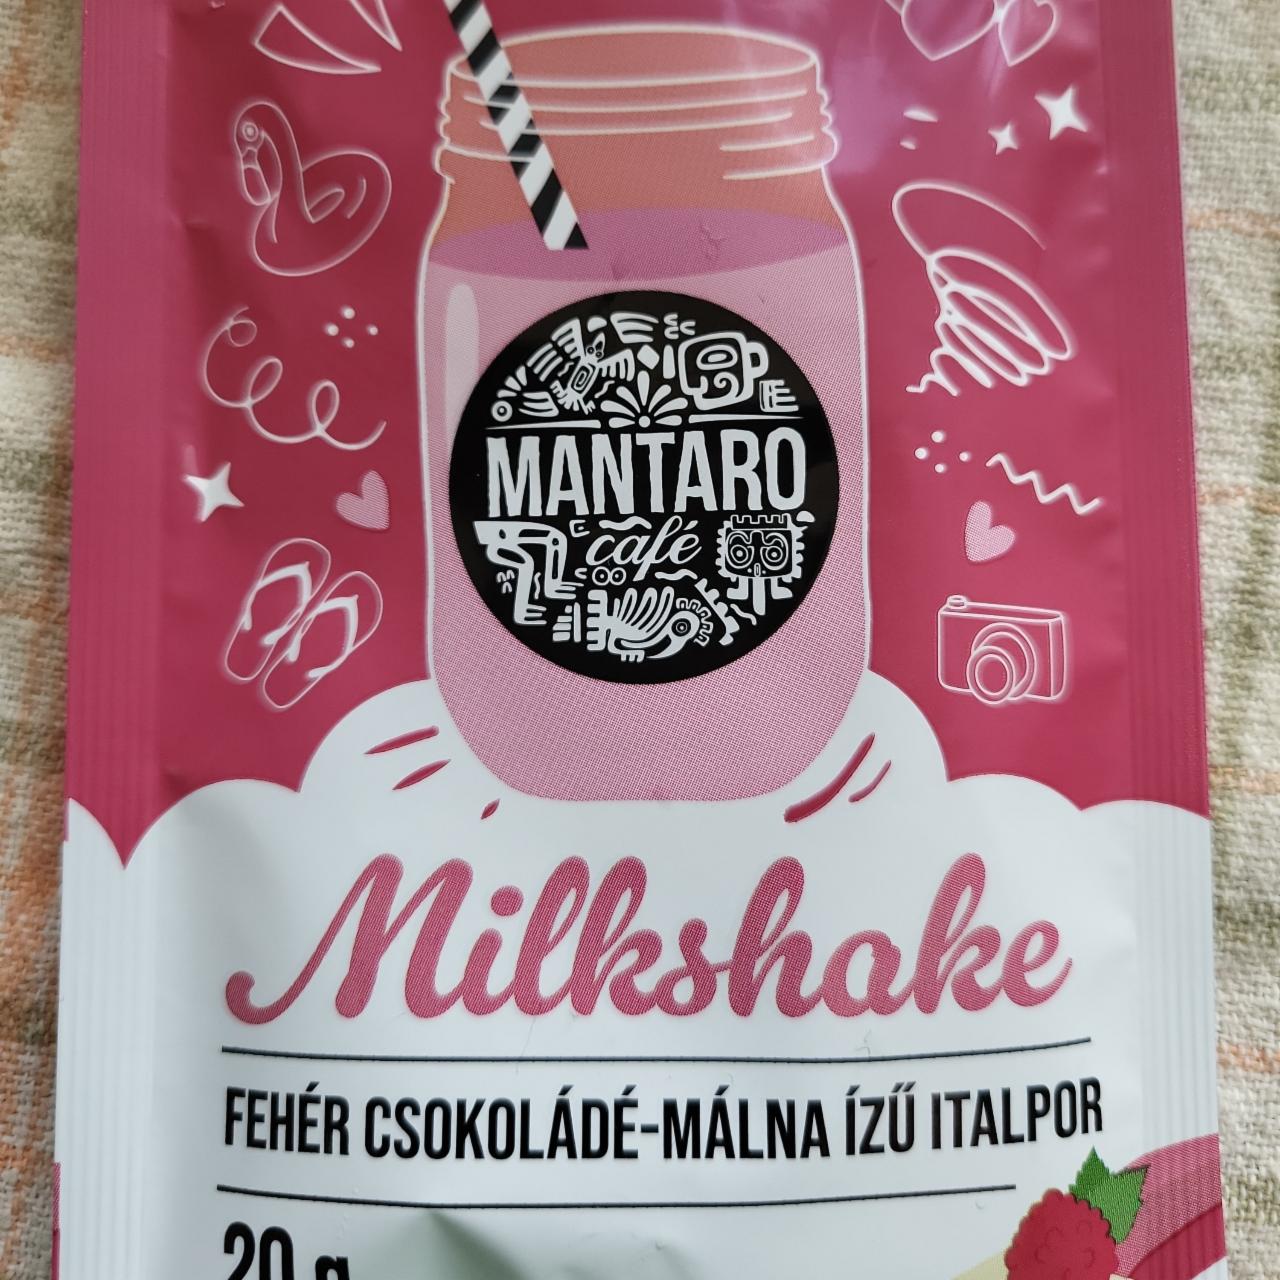 Képek - Milkshake Fehér csokoládé-málna ízű italpor Mantaro